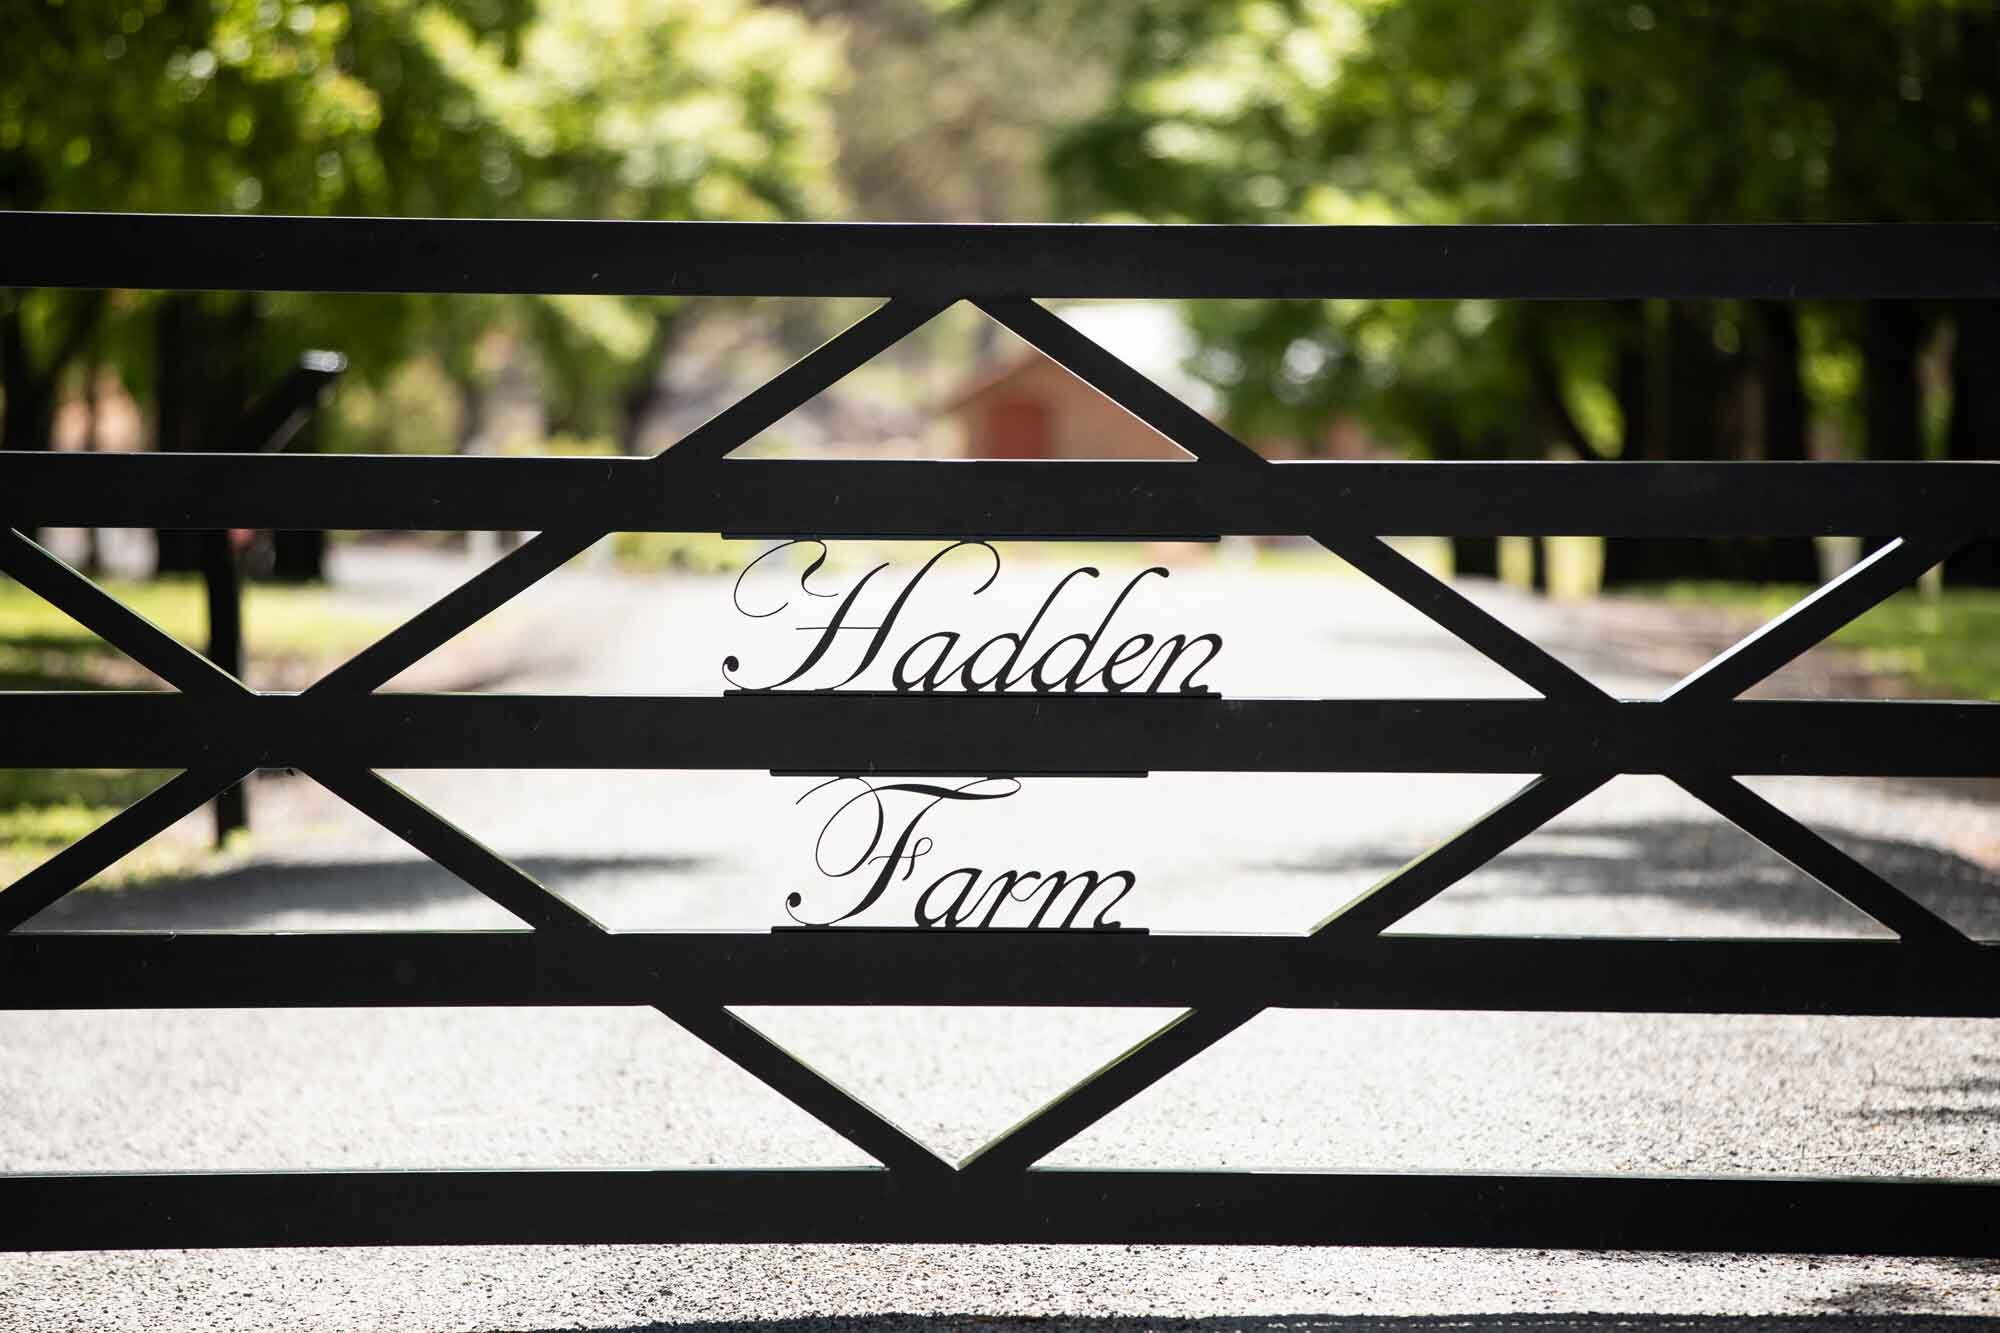 Hadden-Farm-photos-145.jpg